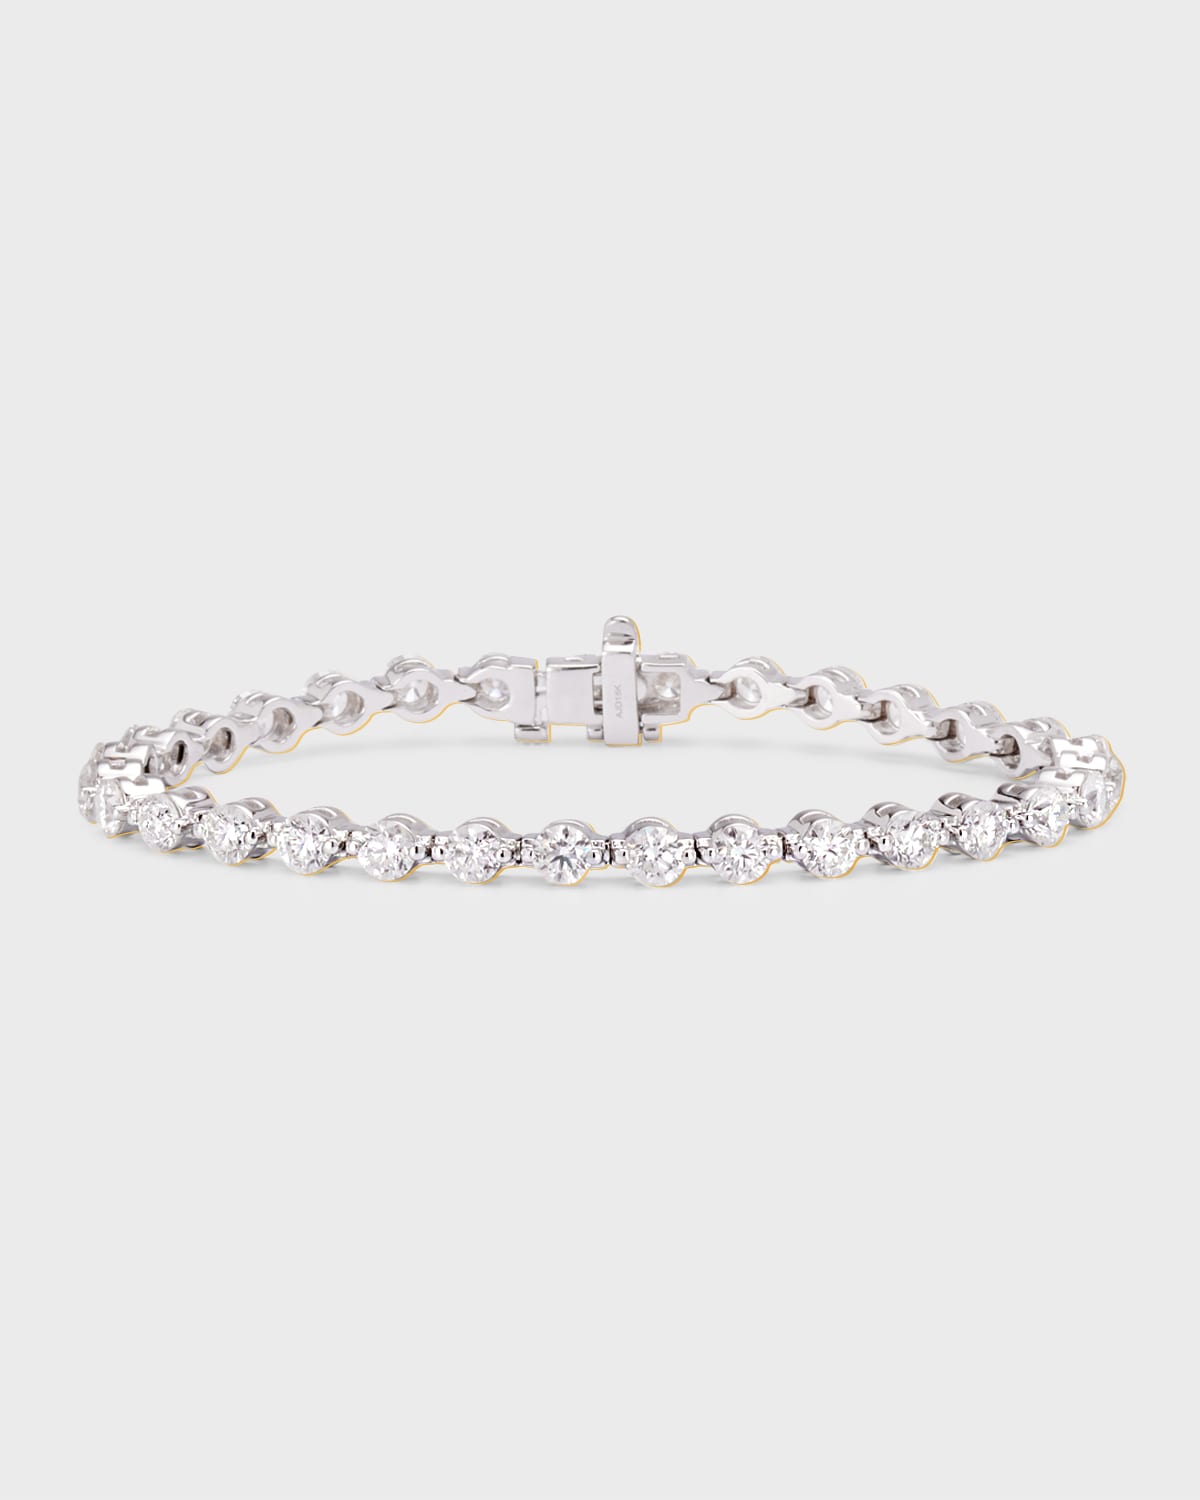 Neiman Marcus Diamonds 18k White Gold Round Diamond Tennis Bracelet